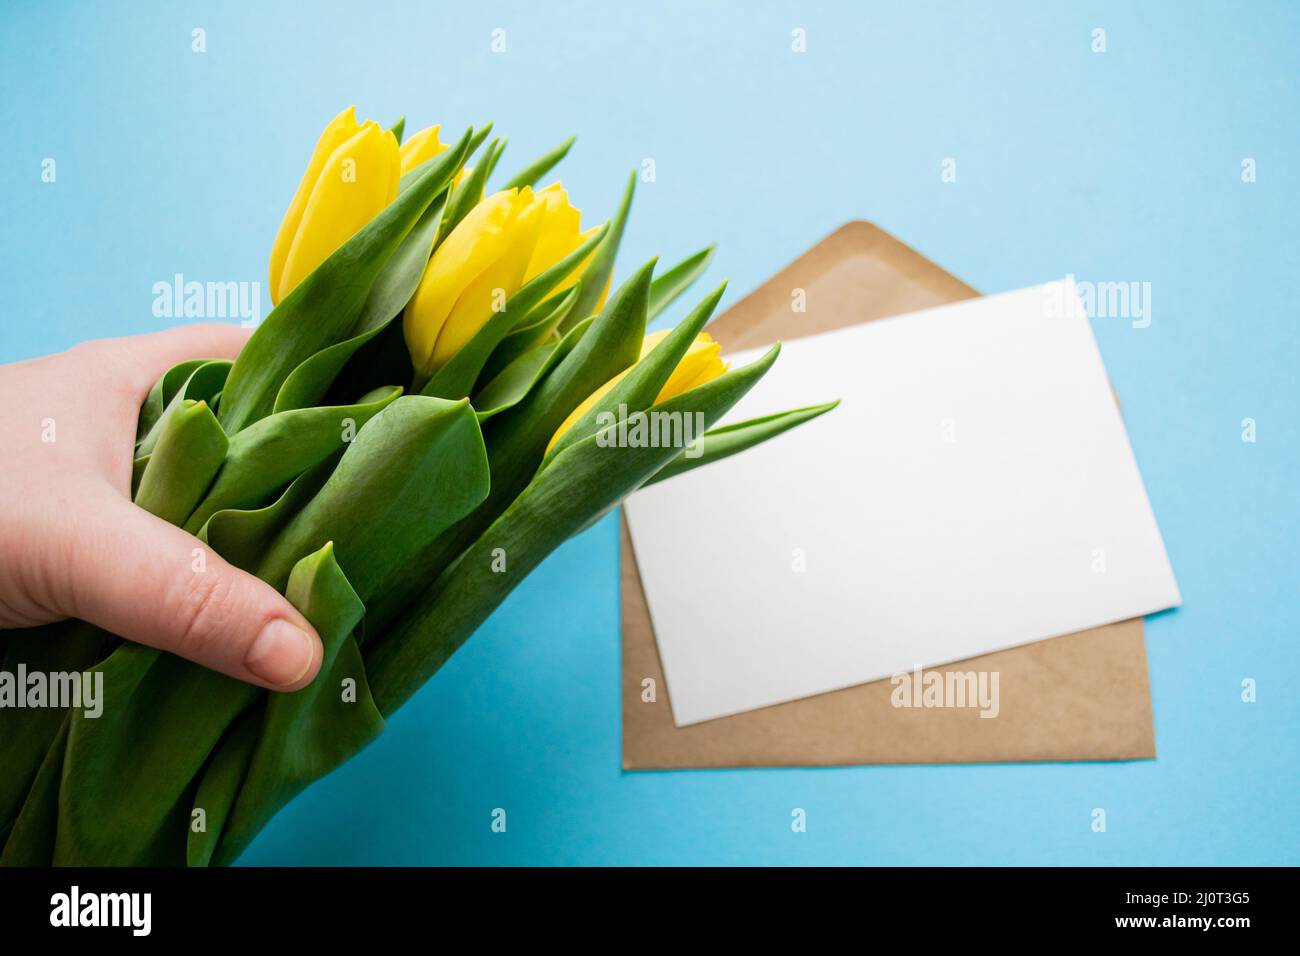 Main contient un bouquet de tulipes jaunes. Lettre vide pour le texte sur fond bleu. Cadeaux et salutations. Banque D'Images